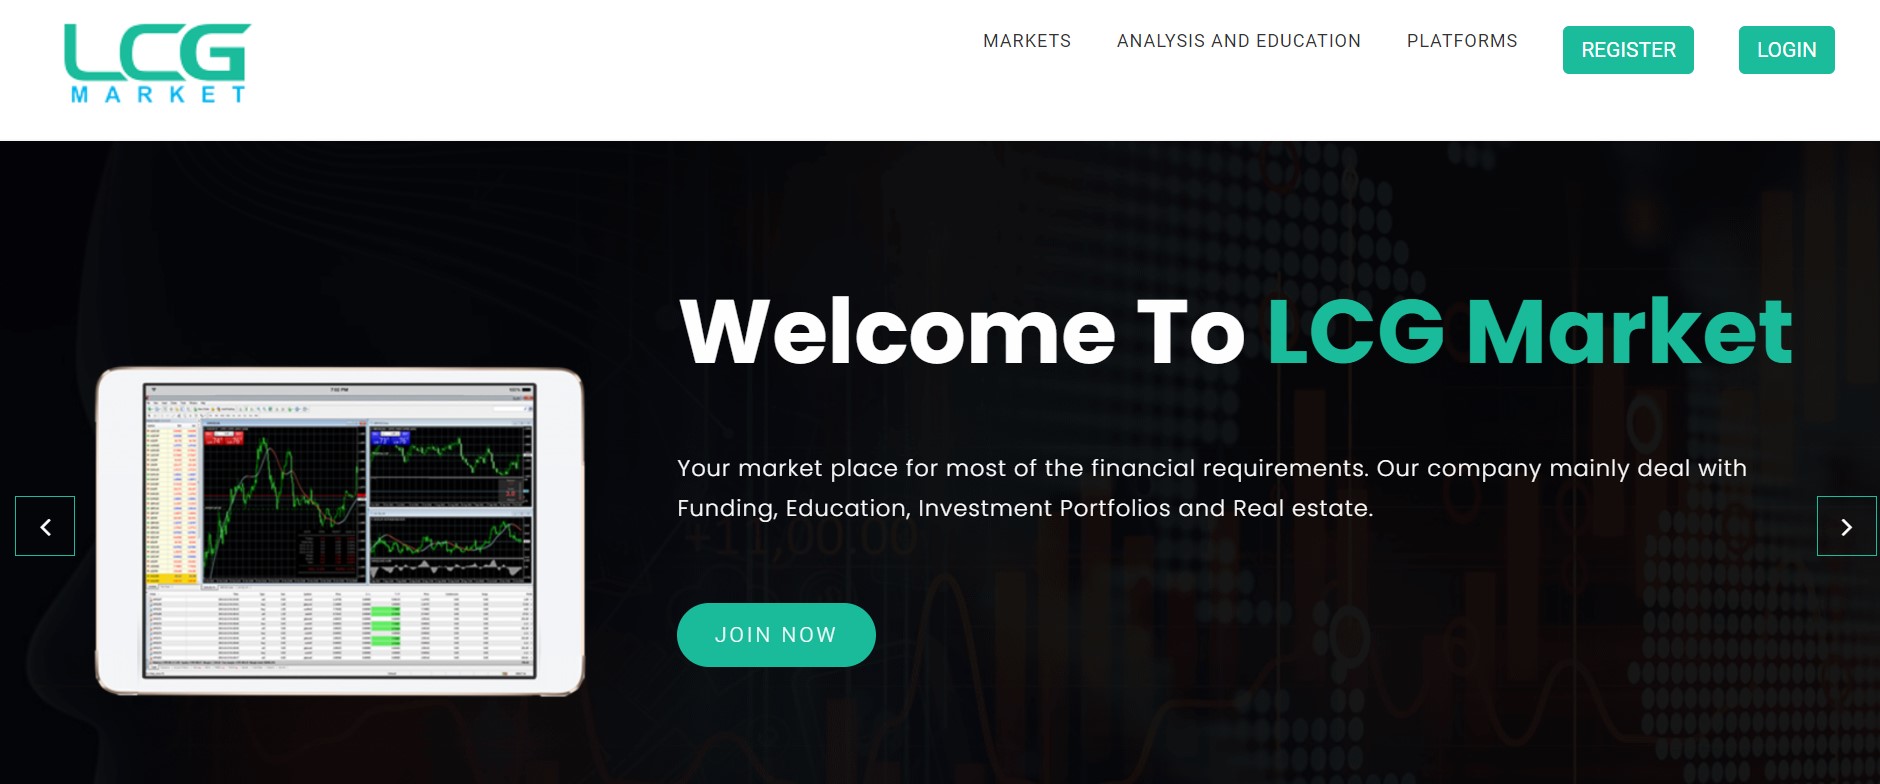 LCG Market website